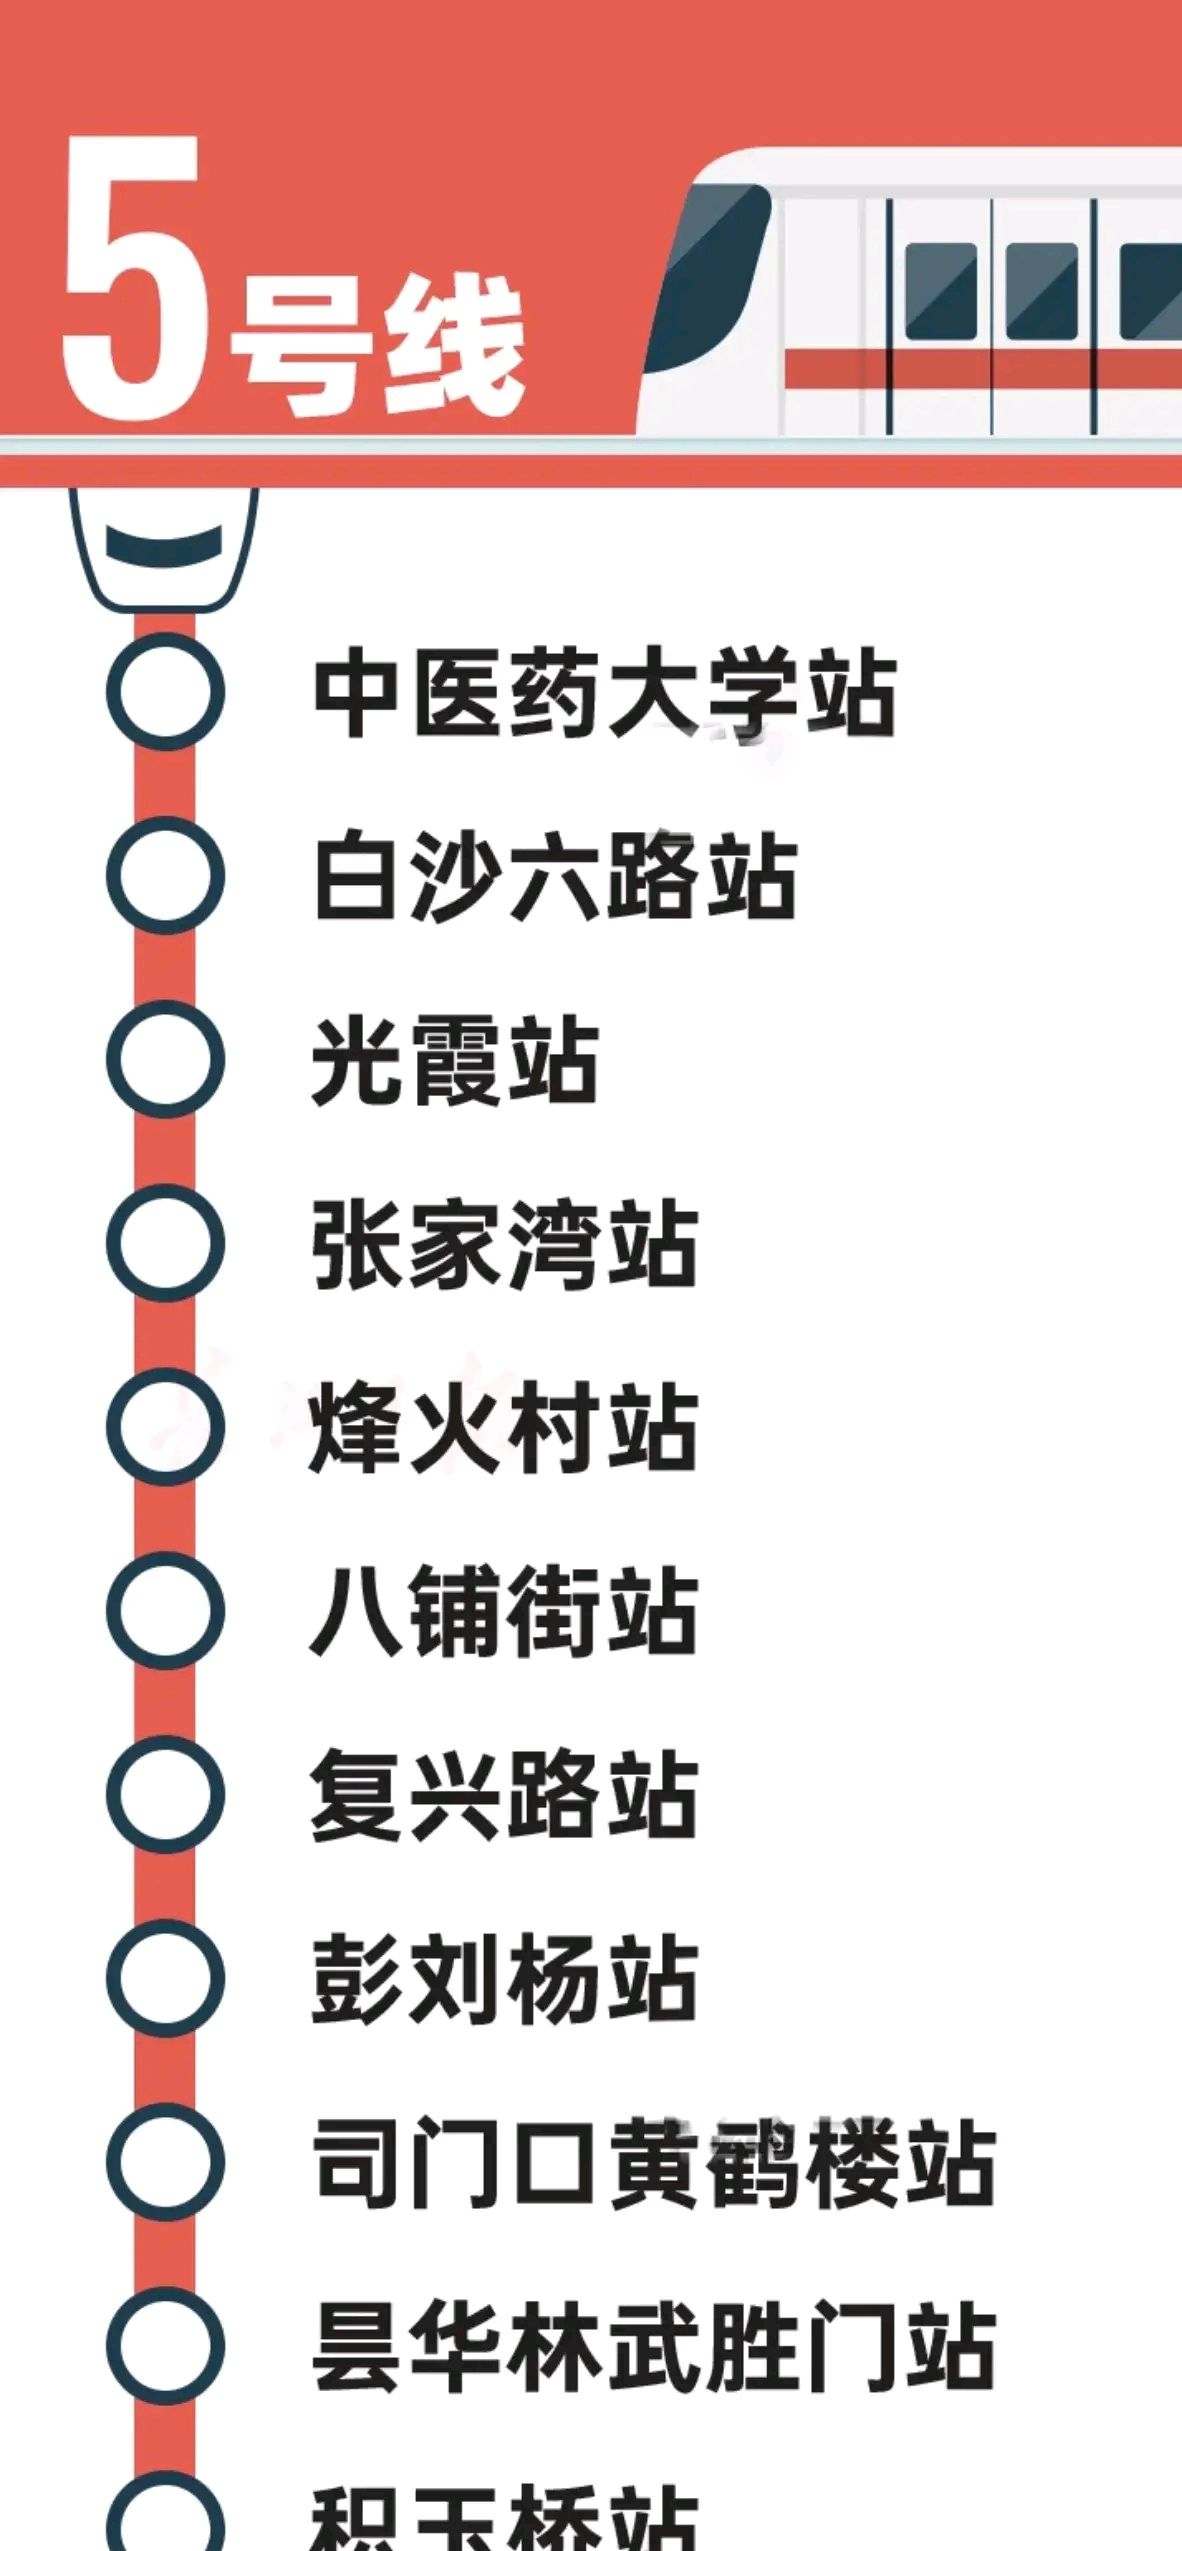 武汉地铁5号线站名确定,快看看有没你家门前